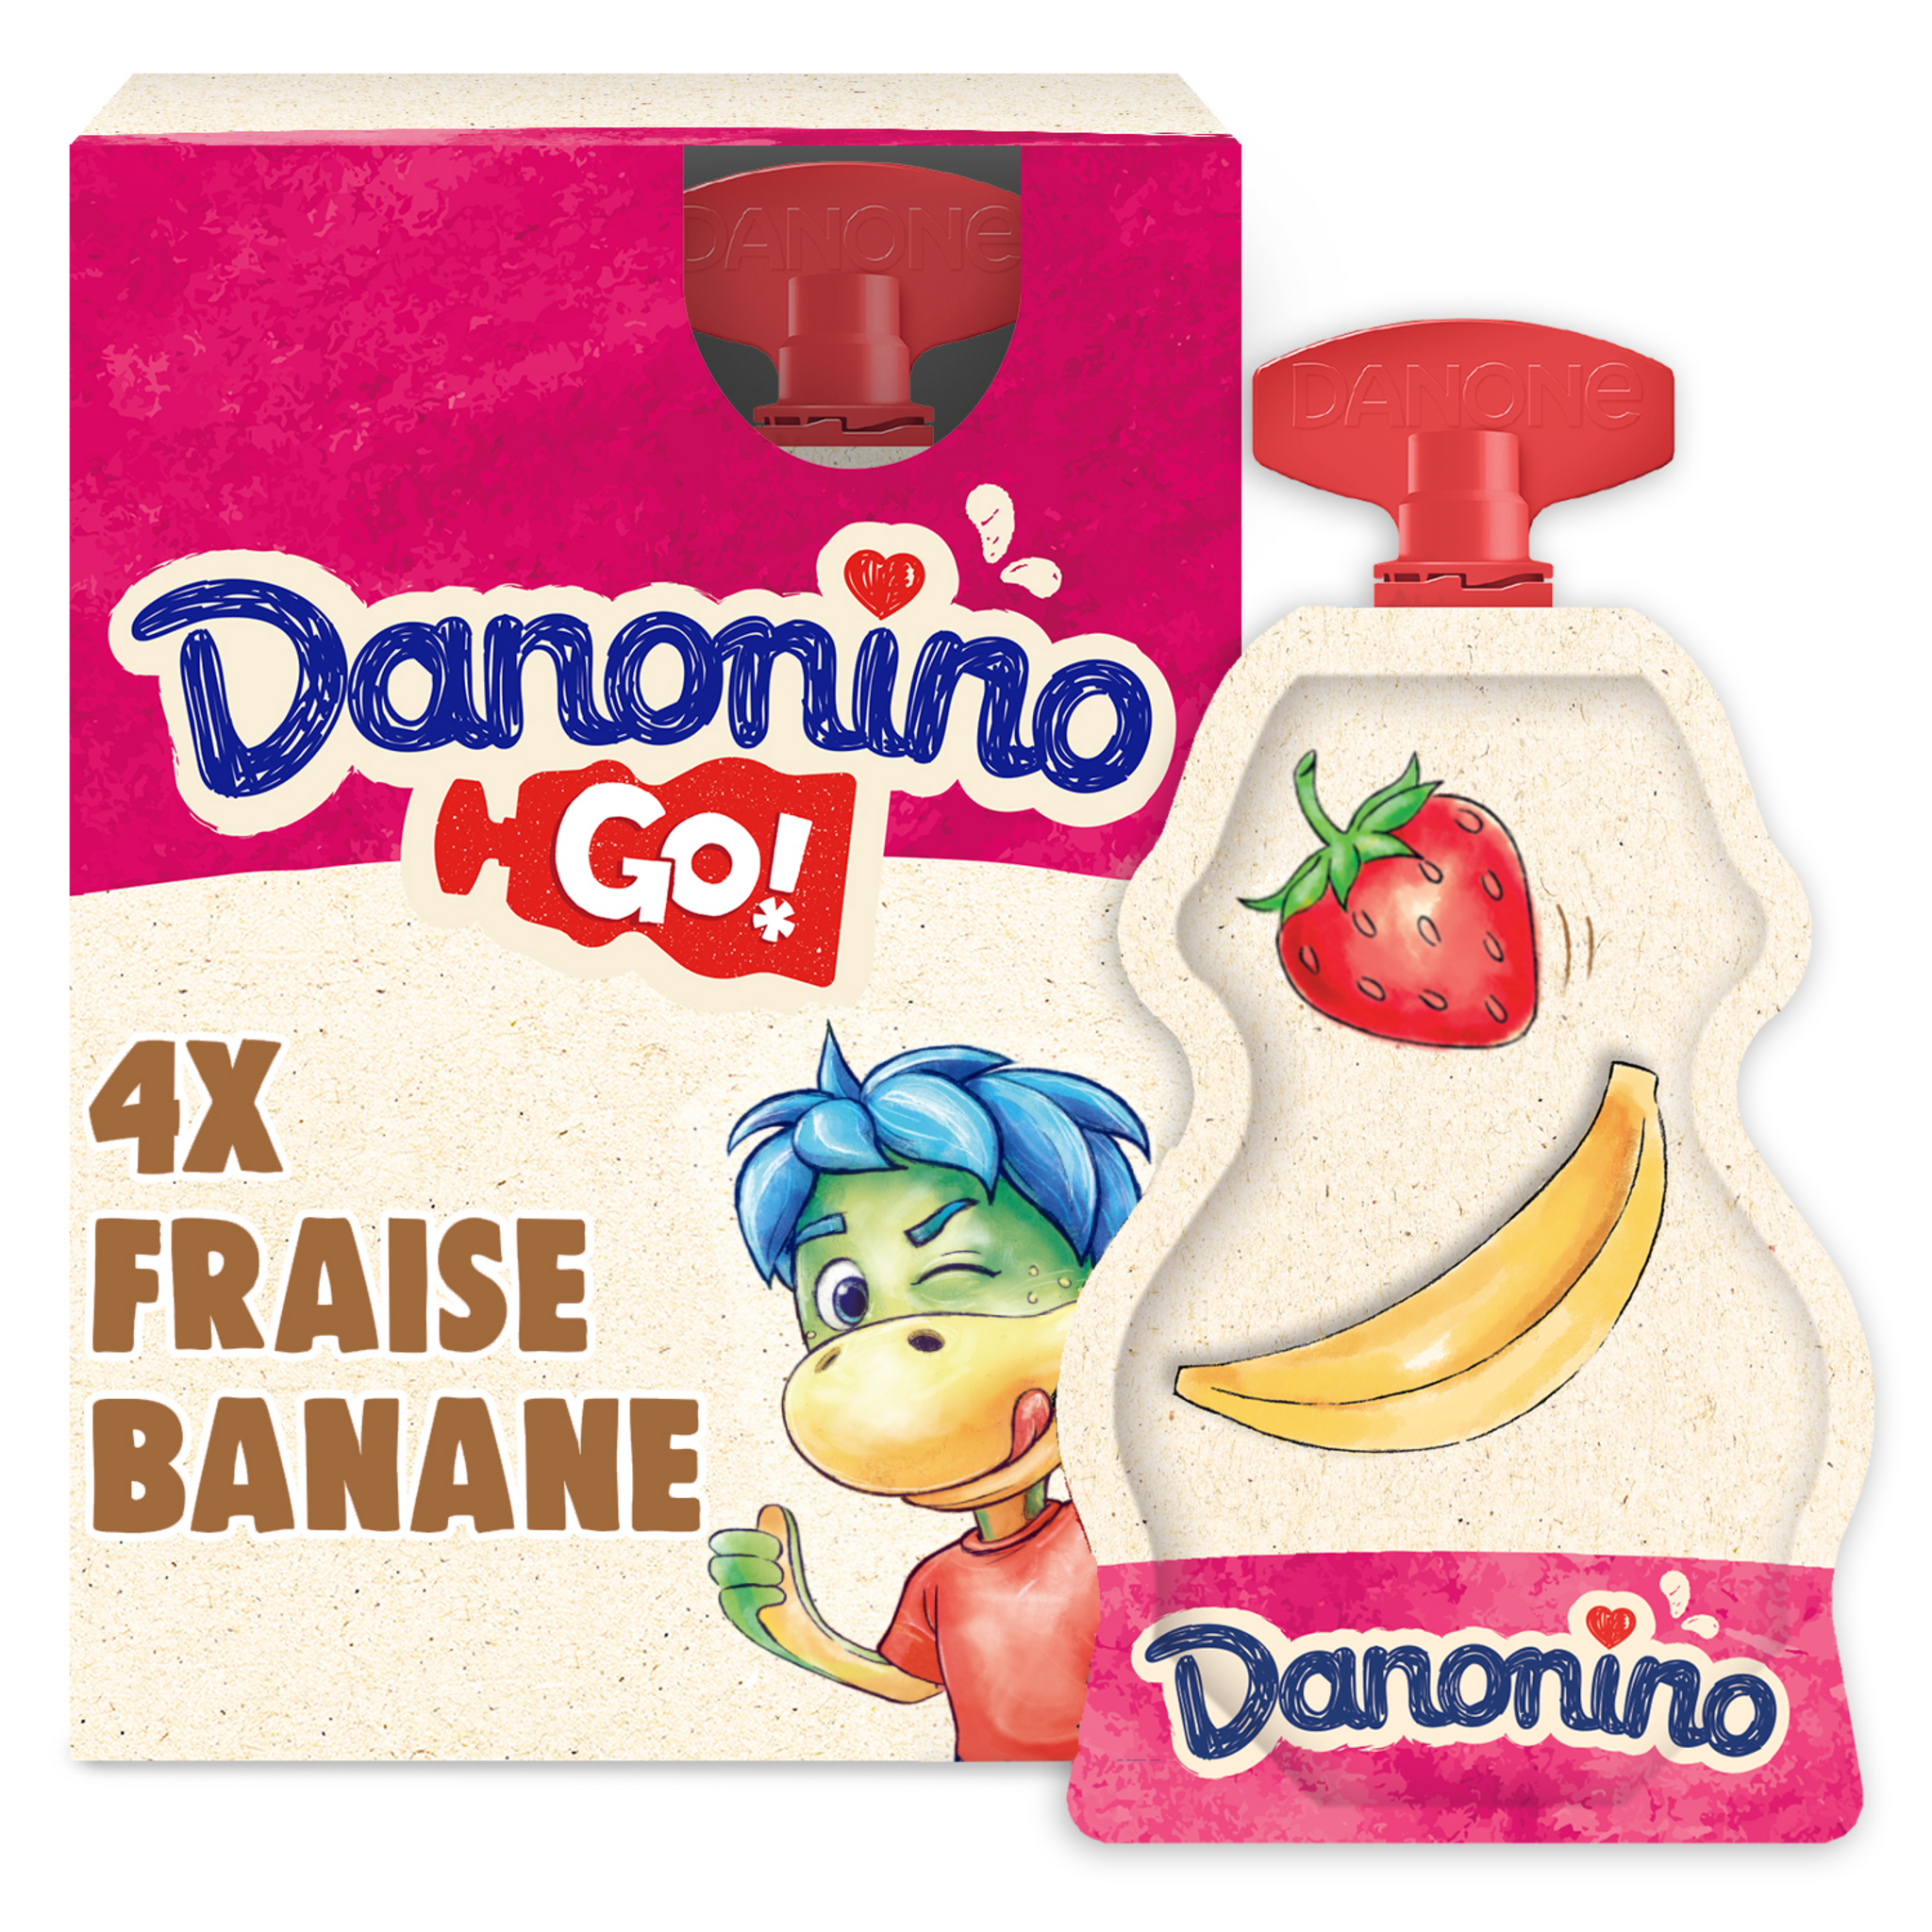 Yaourt à boire banane fraise ELO